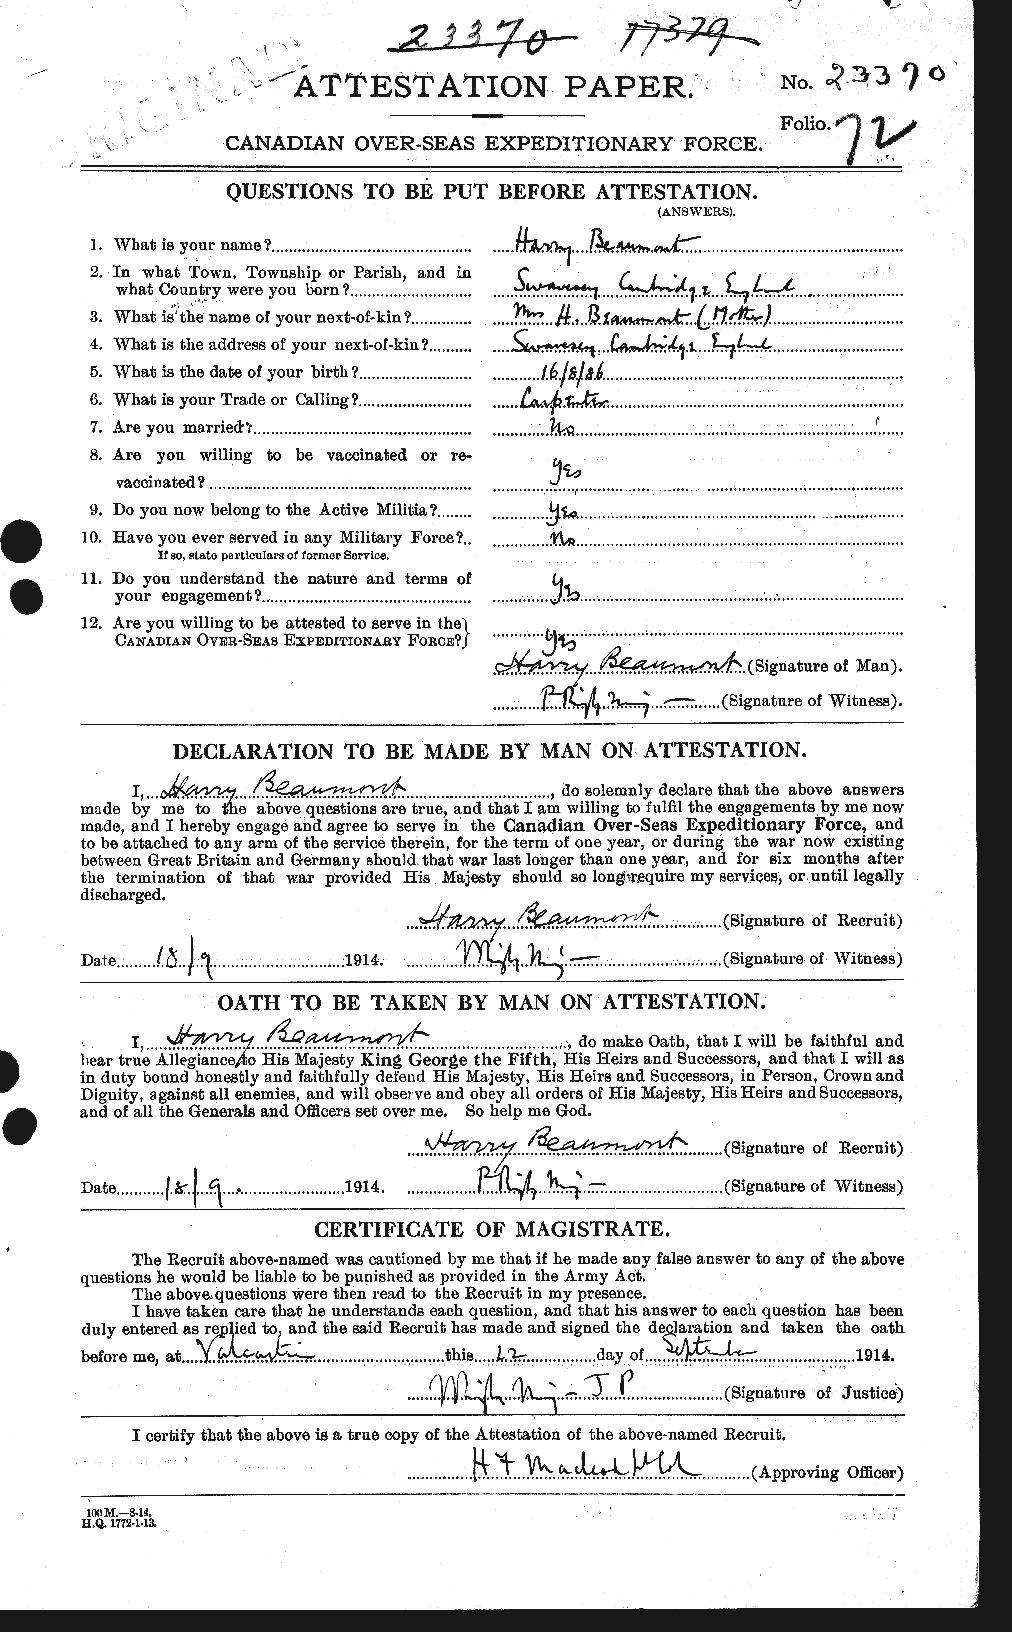 Dossiers du Personnel de la Première Guerre mondiale - CEC 231673a